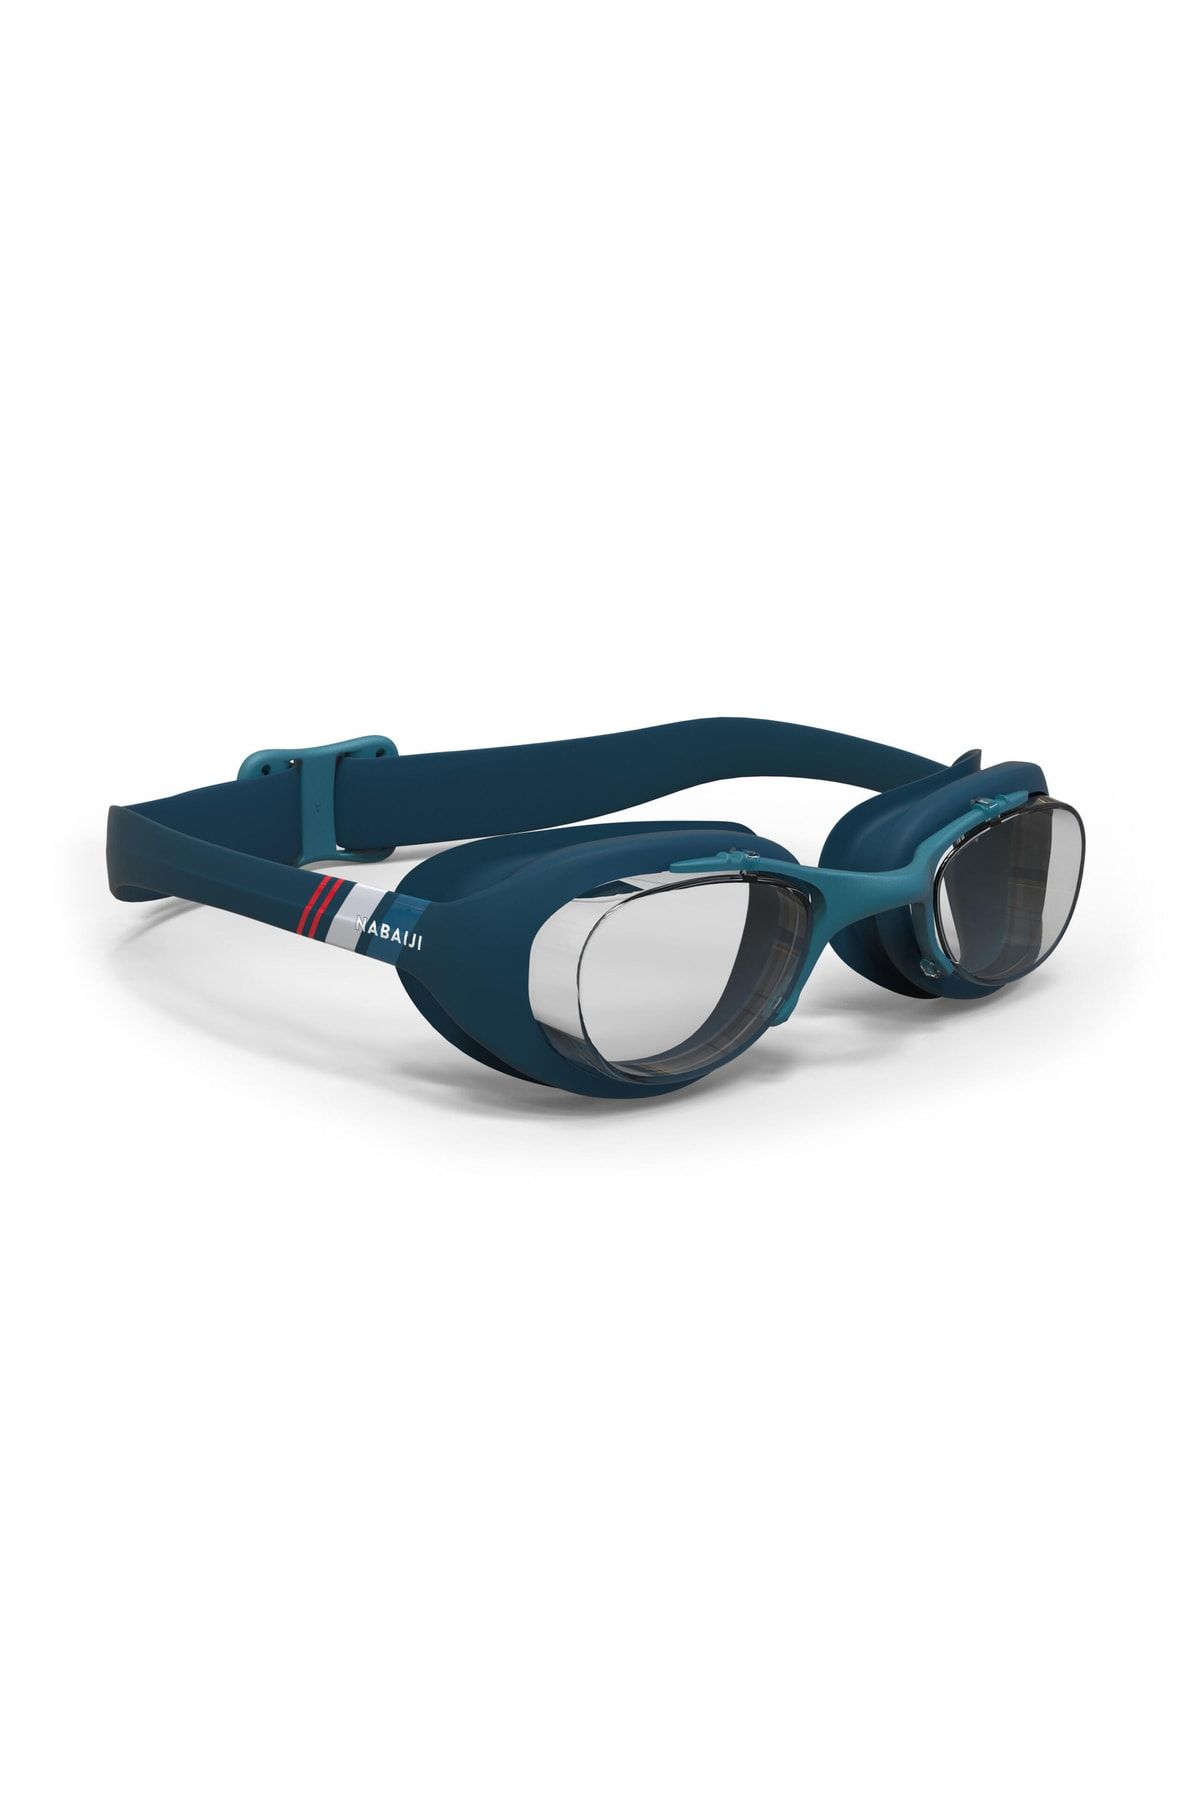 Decathlon Nabaiji Yüzücü Gözlüğü-buğu Yapmaz-deniz Havuz Gözlüğü L Boy - Mavi / Lacivert / Kırmızı - 100 Xbase